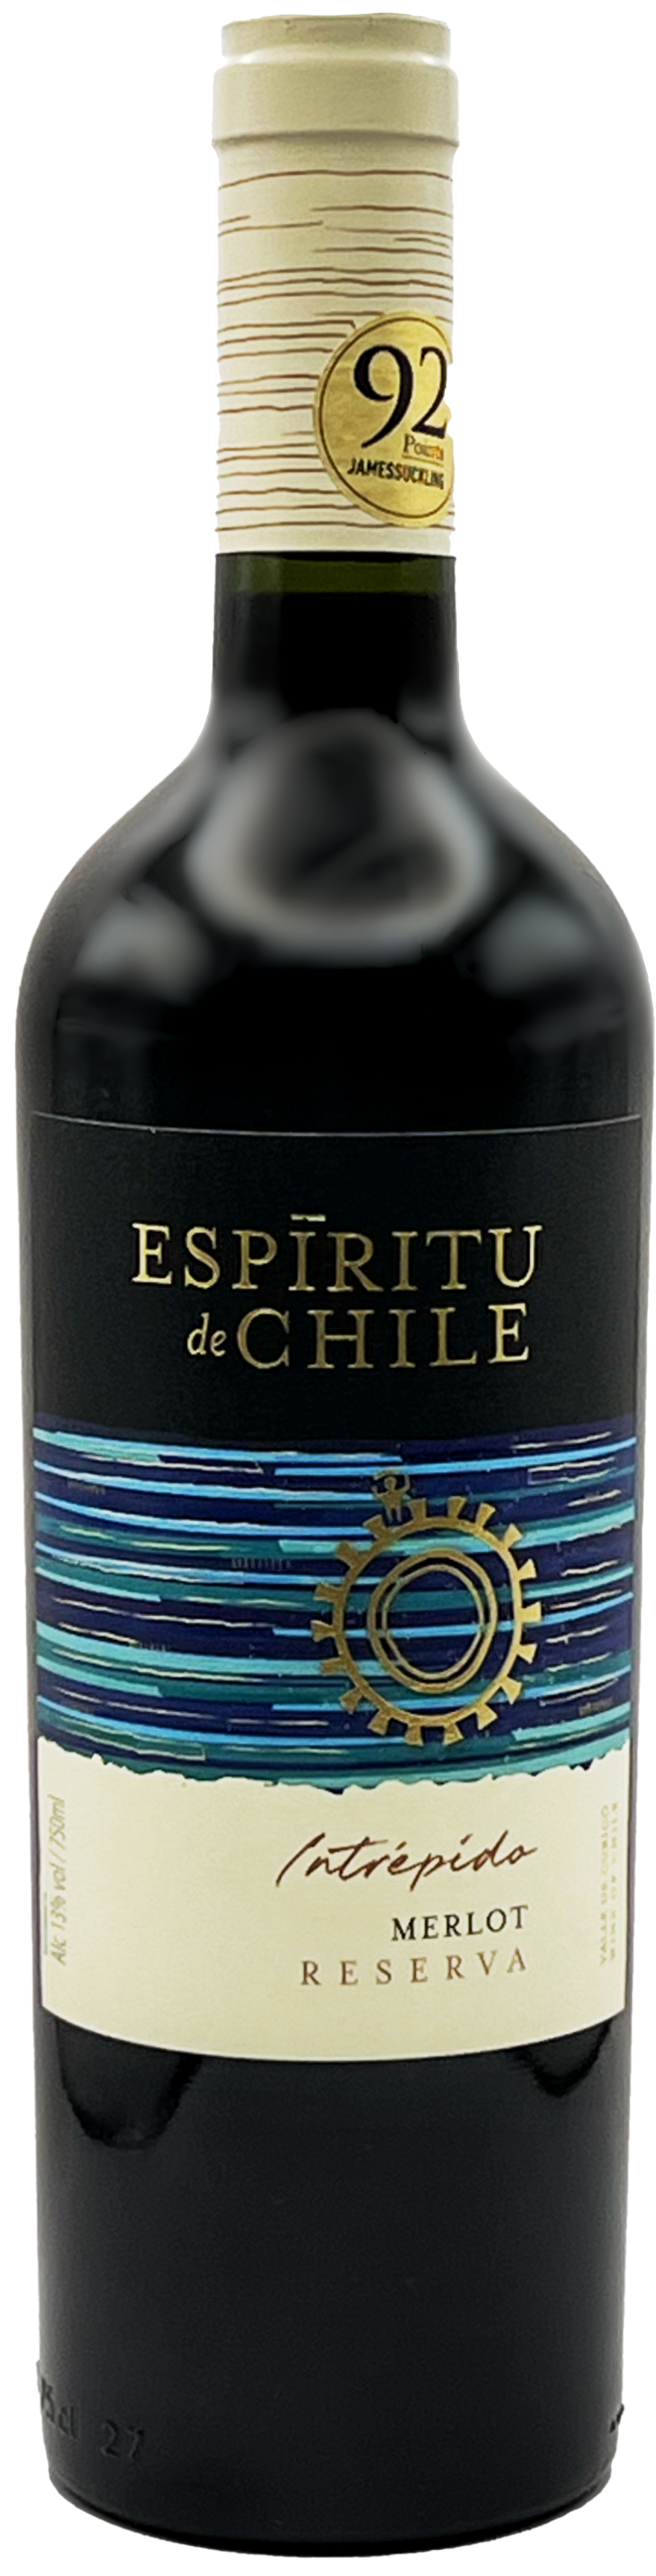 Espiritu - Values Chile Reserva de 2019 Merlot Bottle